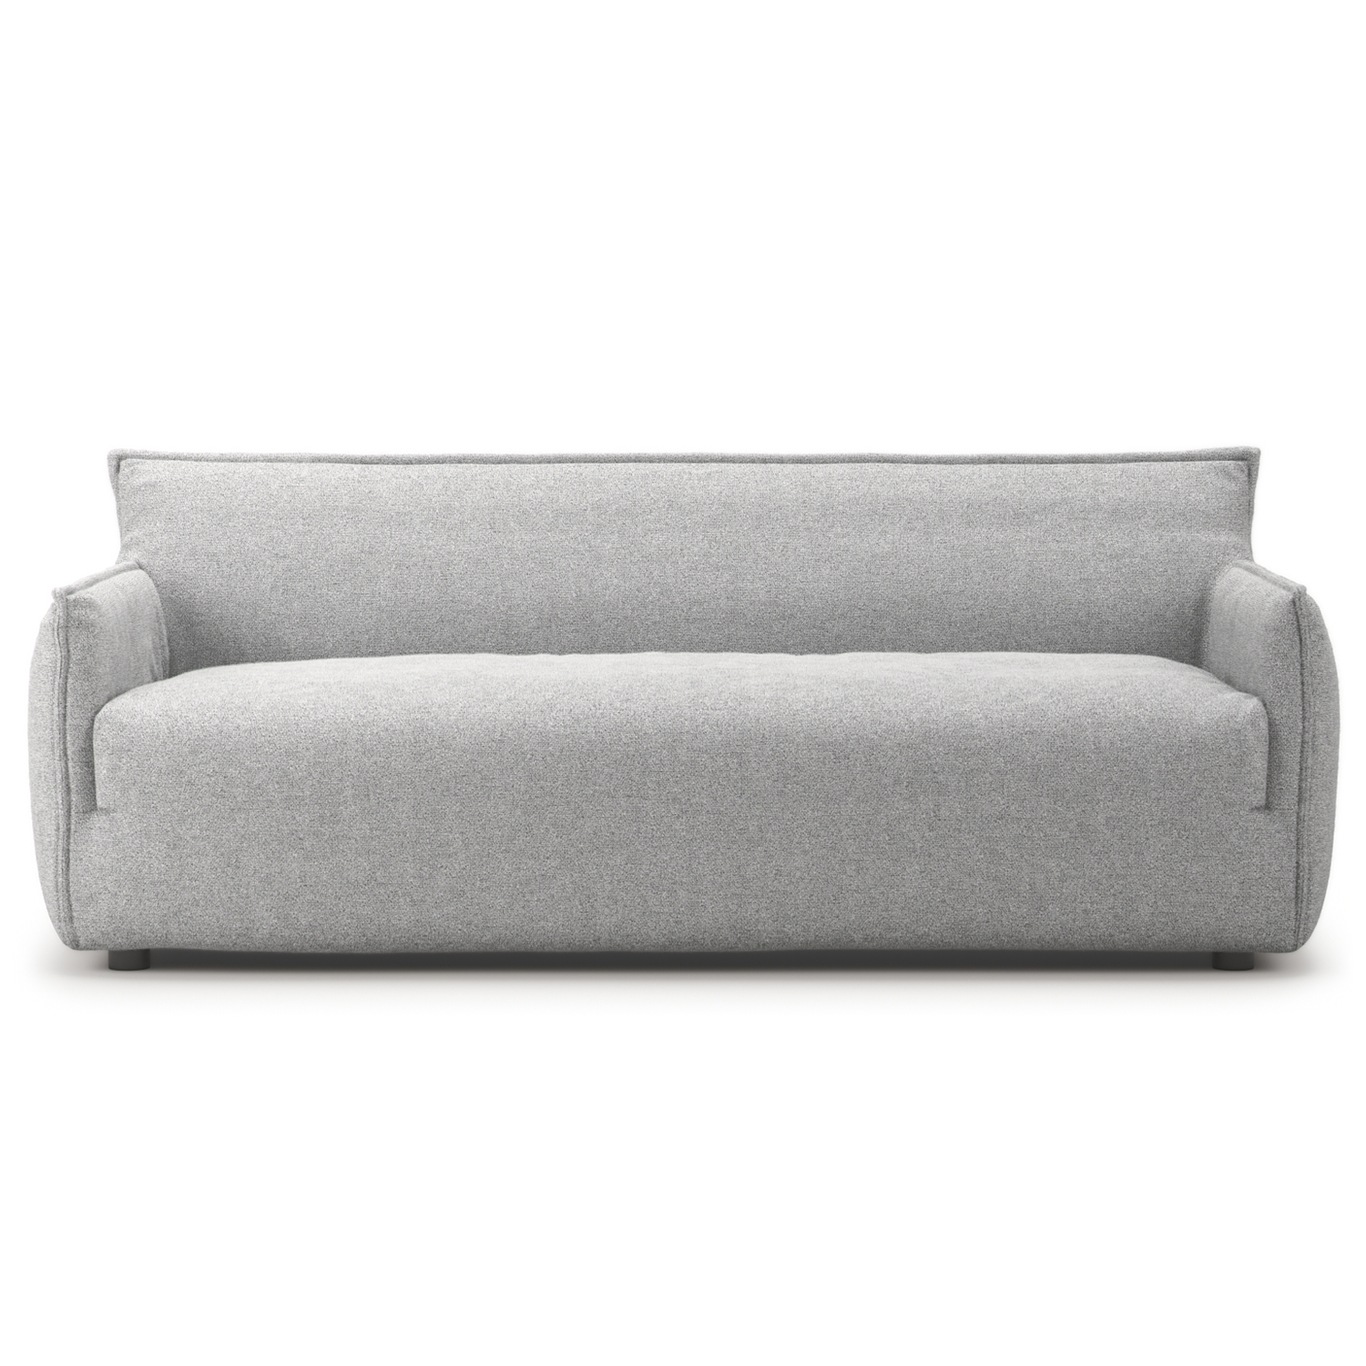 Le Petite 3-Personers Sofa, Pacific white